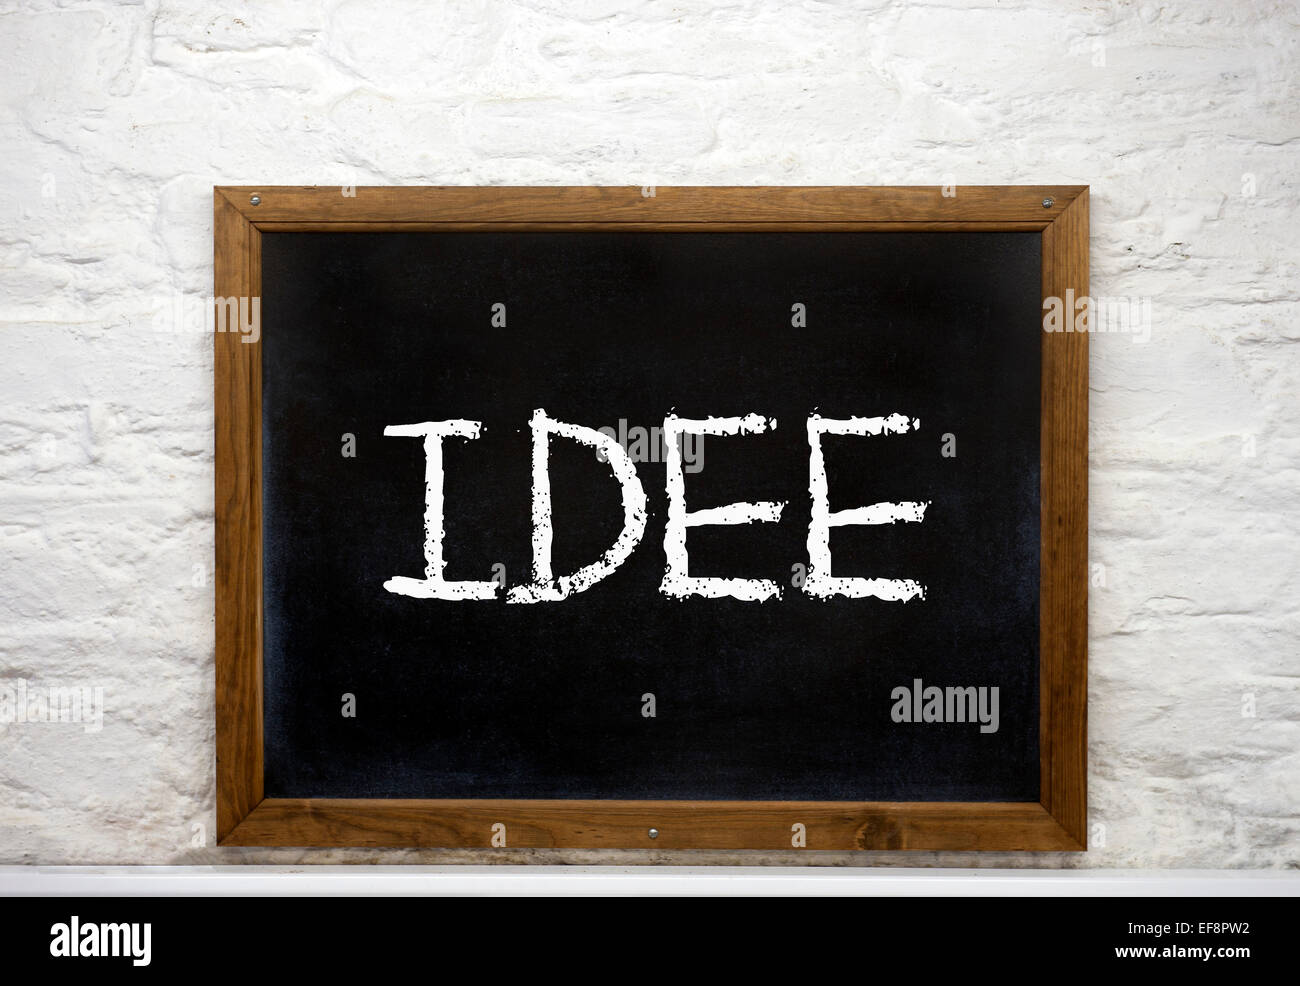 Pizarra con la palabra "Idee", Alemán para idea Fotografía de stock - Alamy